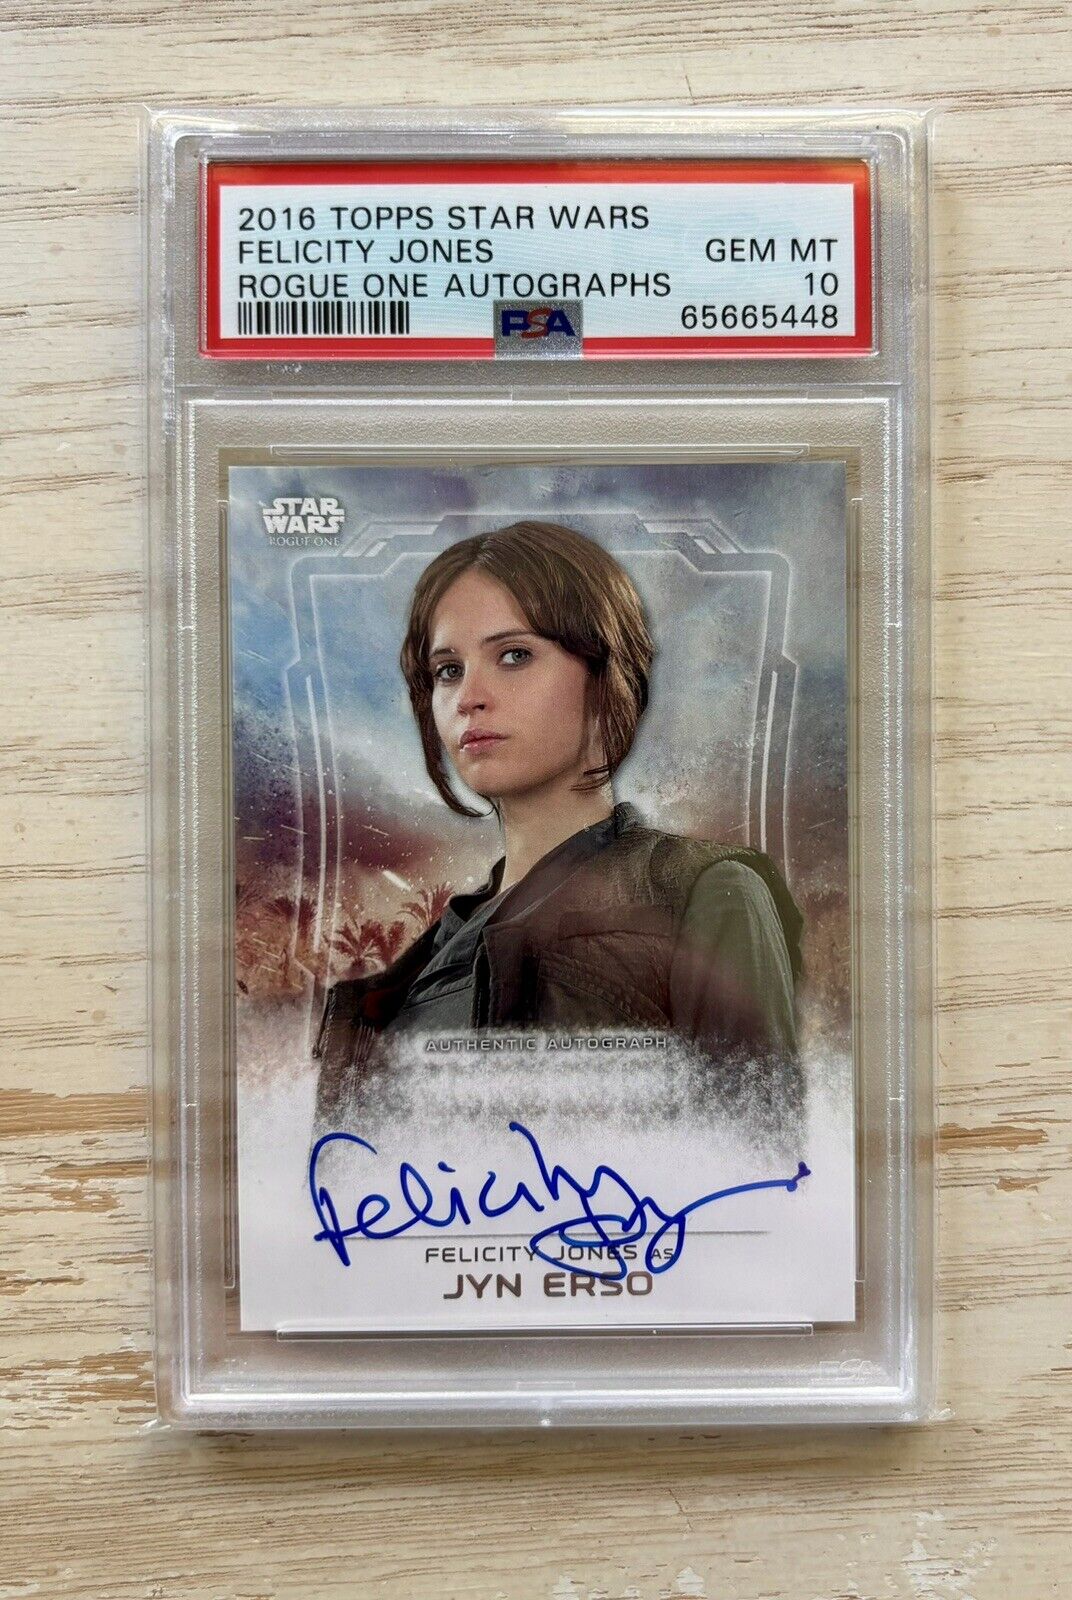 2016 Topps Star Wars Rogue One Felicity Jones as JYN ERSO Autograph PSA 10 GEM